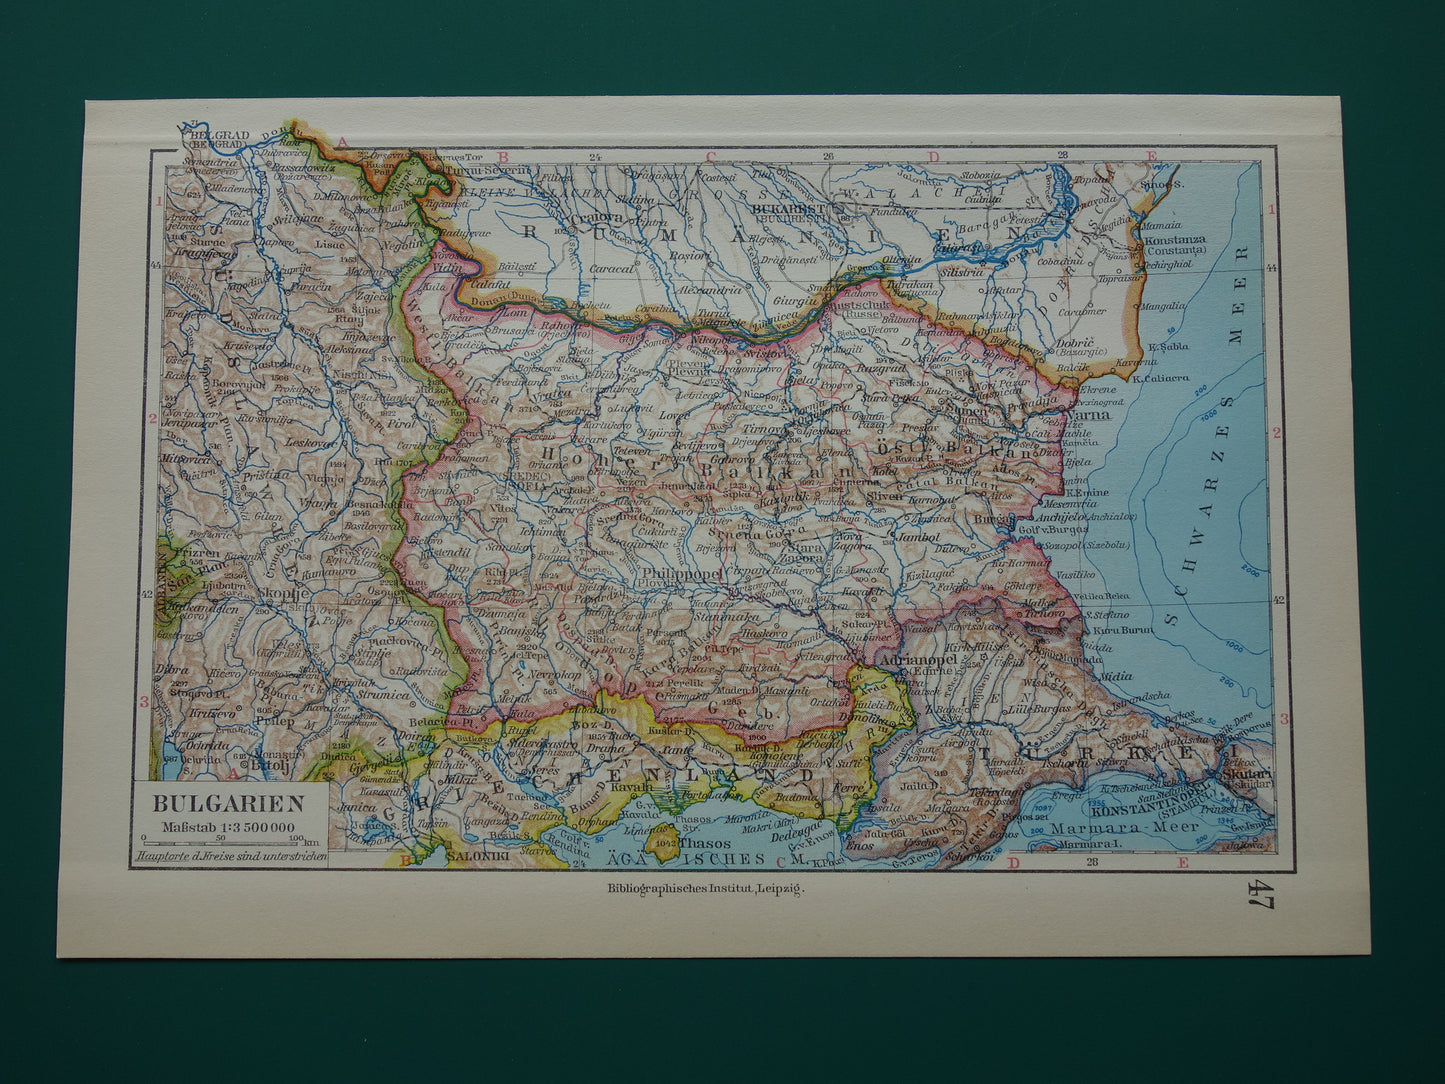 BULGARIJE oude landkaart van Bulgarije uit 1928 originele vintage kaart